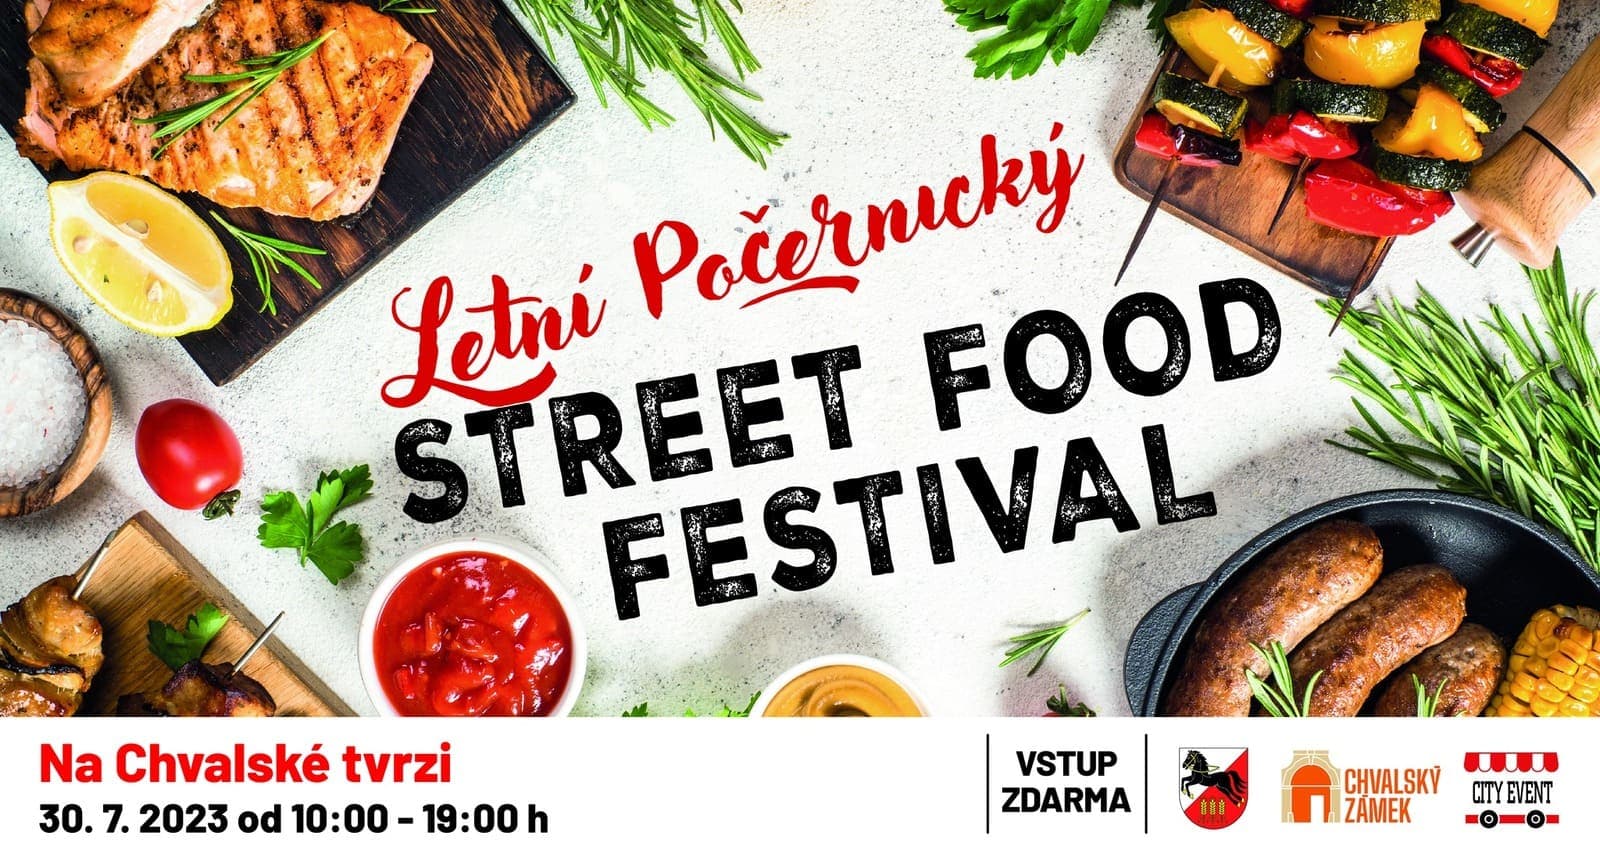 30 июля в Праге пройдет Letní Počernický Street Food Festival